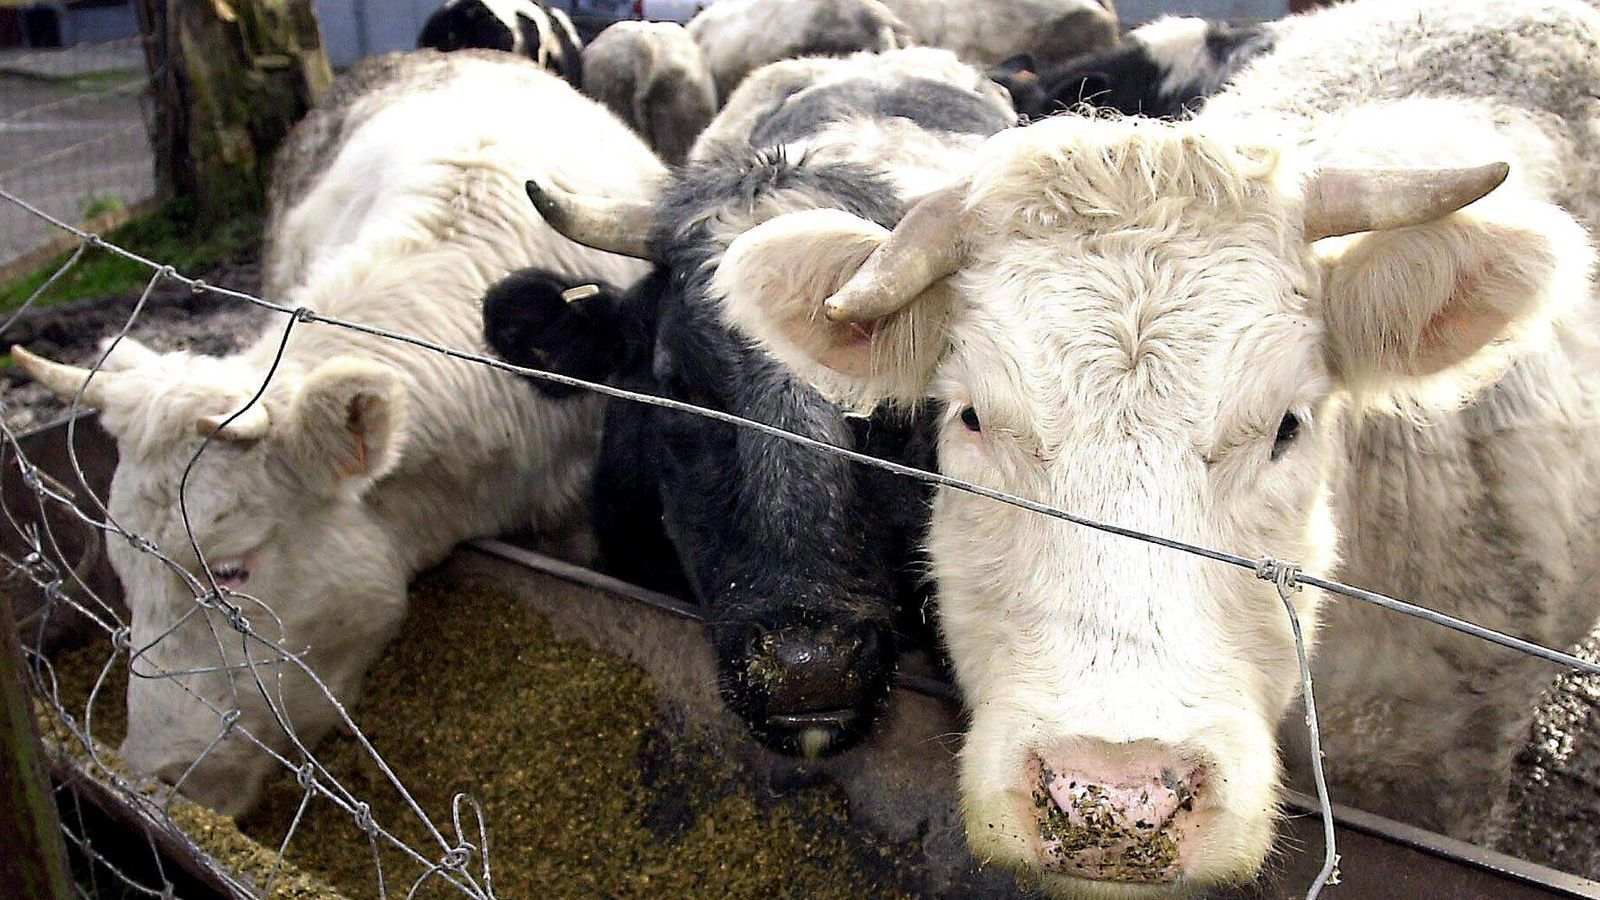 
                <strong>Erster BSE-Fall in Deutschland</strong><br>
                Im November wird der erste Fall von BSE in Deutschland bekannt. Die Krankheit tritt bei Rindern auf und macht ganz Deutschland verrückt. Zahlreiche Tiere werden daraufhin provisorisch geschlachtet, um das Virus einzudämmen.
              